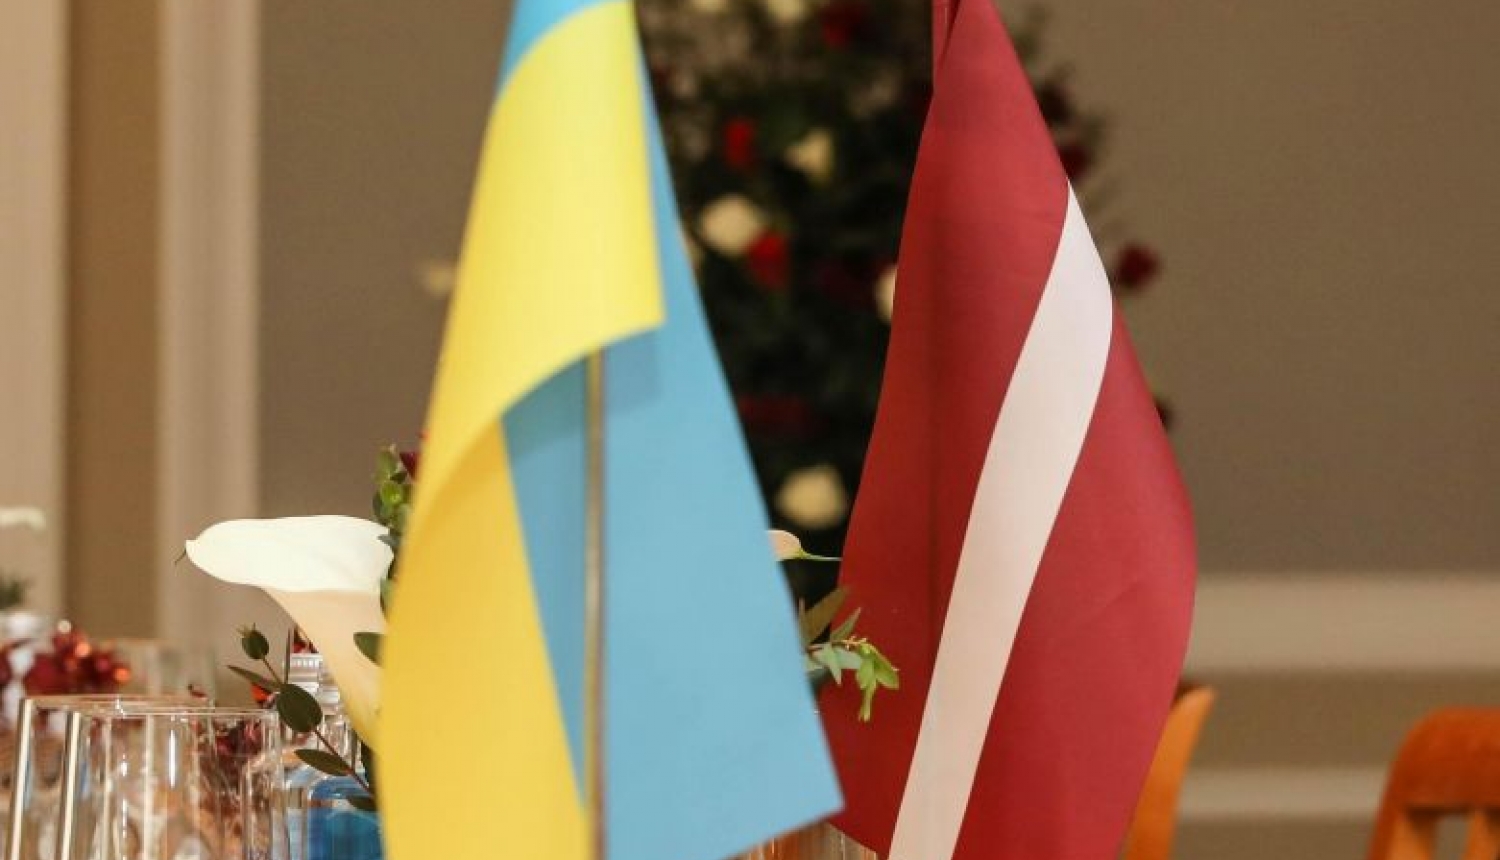 Latvija atbalsta Ukrainas suverenitāti un teritoriālo integritāti un nemainīgo eiroatlantiskās integrācijas kursu